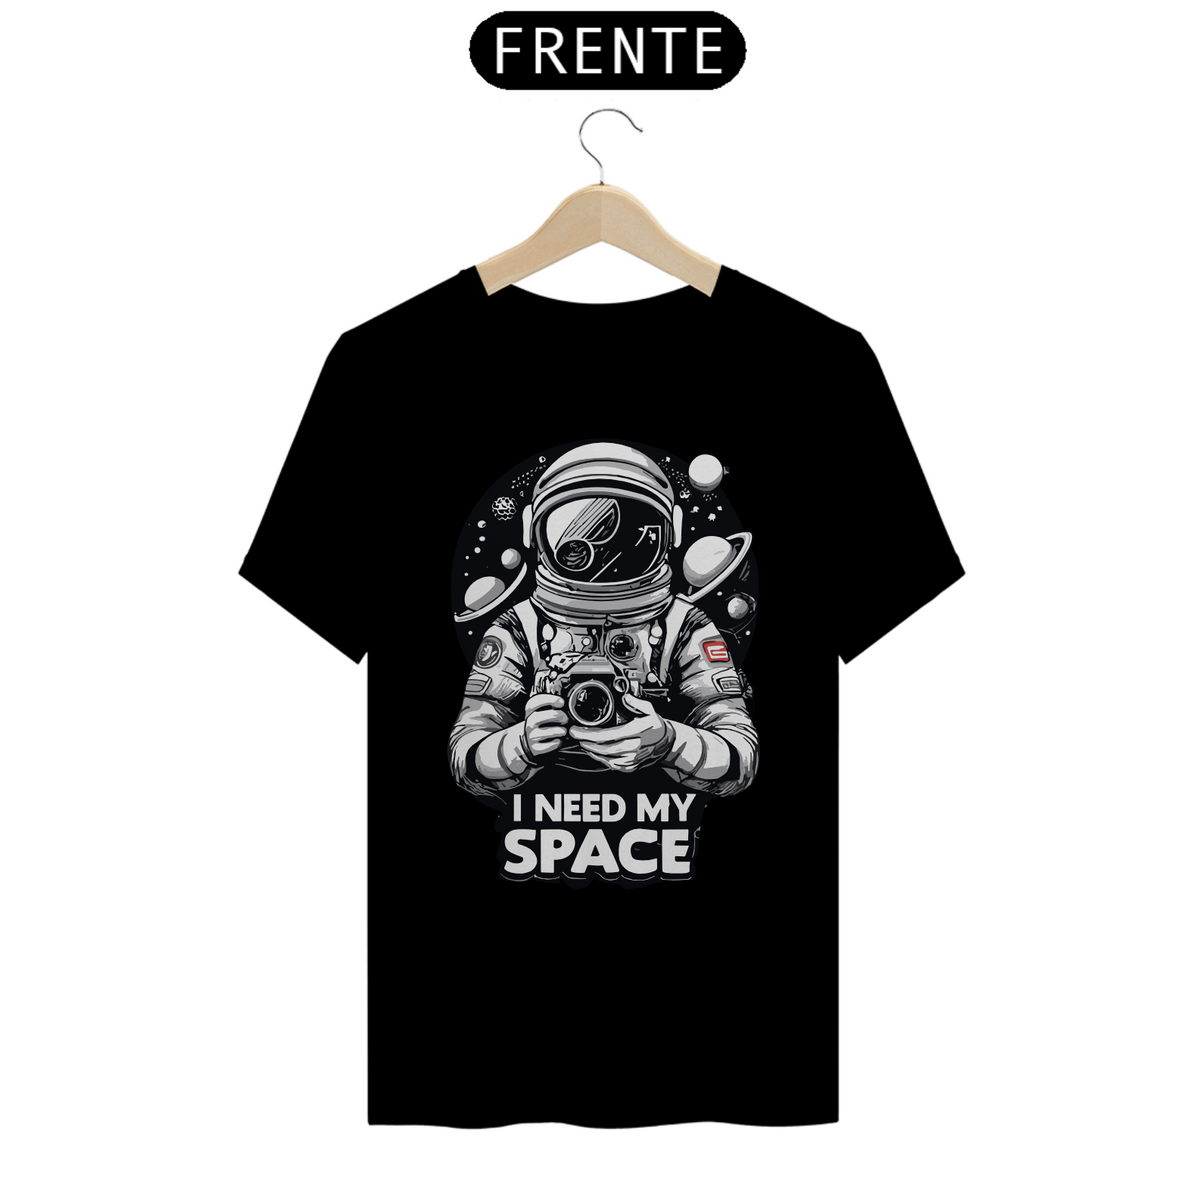 Nome do produto: I NEED MY SPACE - Camiseta Personalizada com Estampa Geek